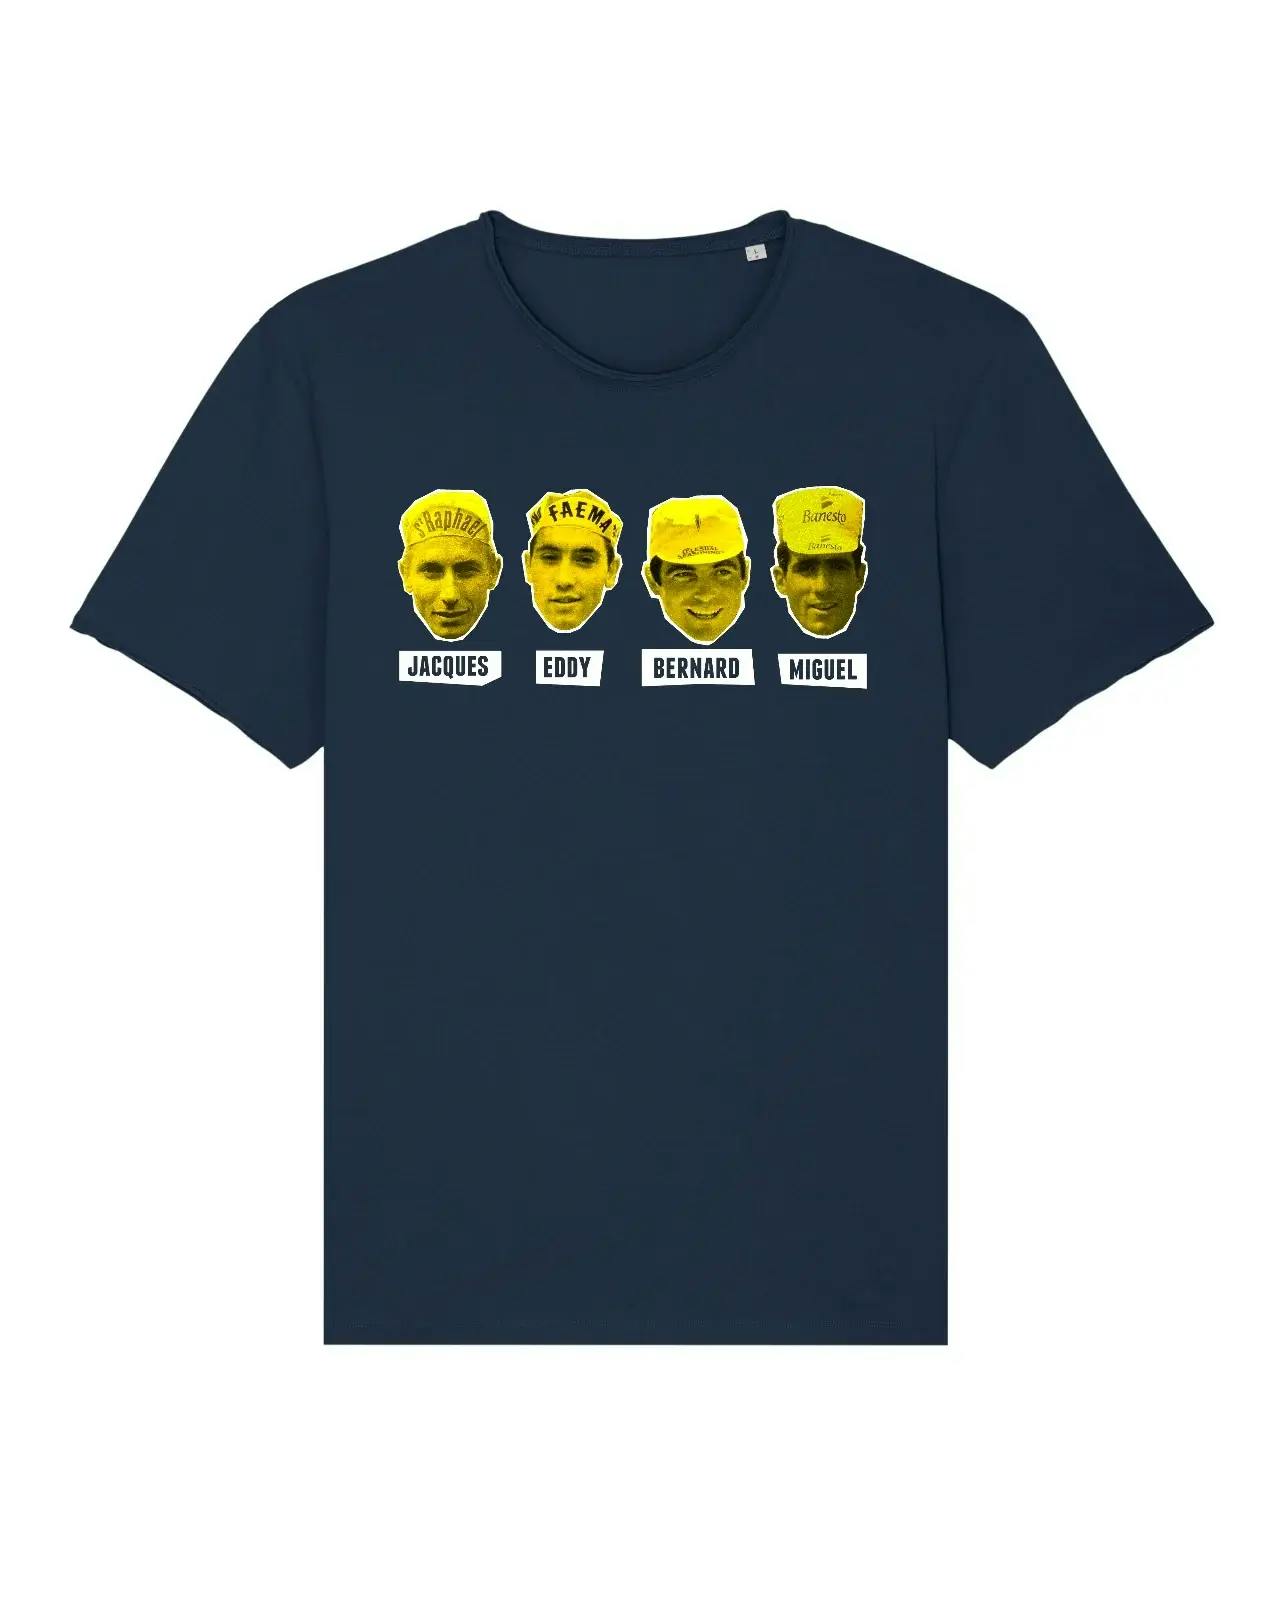 Tour de France icons T-Shirt